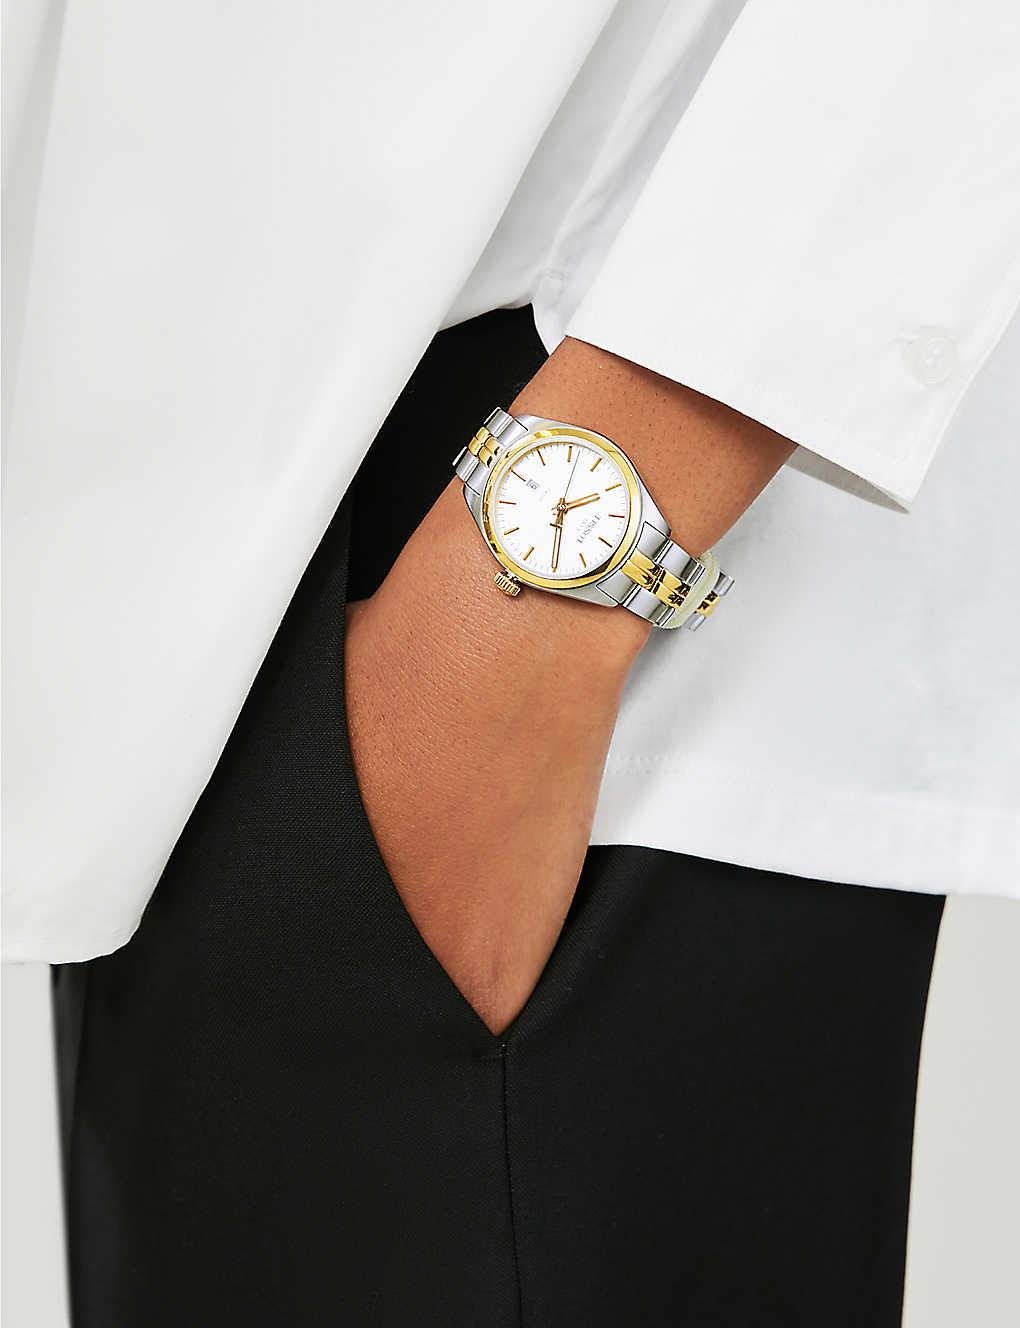 Tissot Swiss Made T-Classic PR100 2 Tone Gold Plated Ladies' Watch T1012102203100 - Prestige